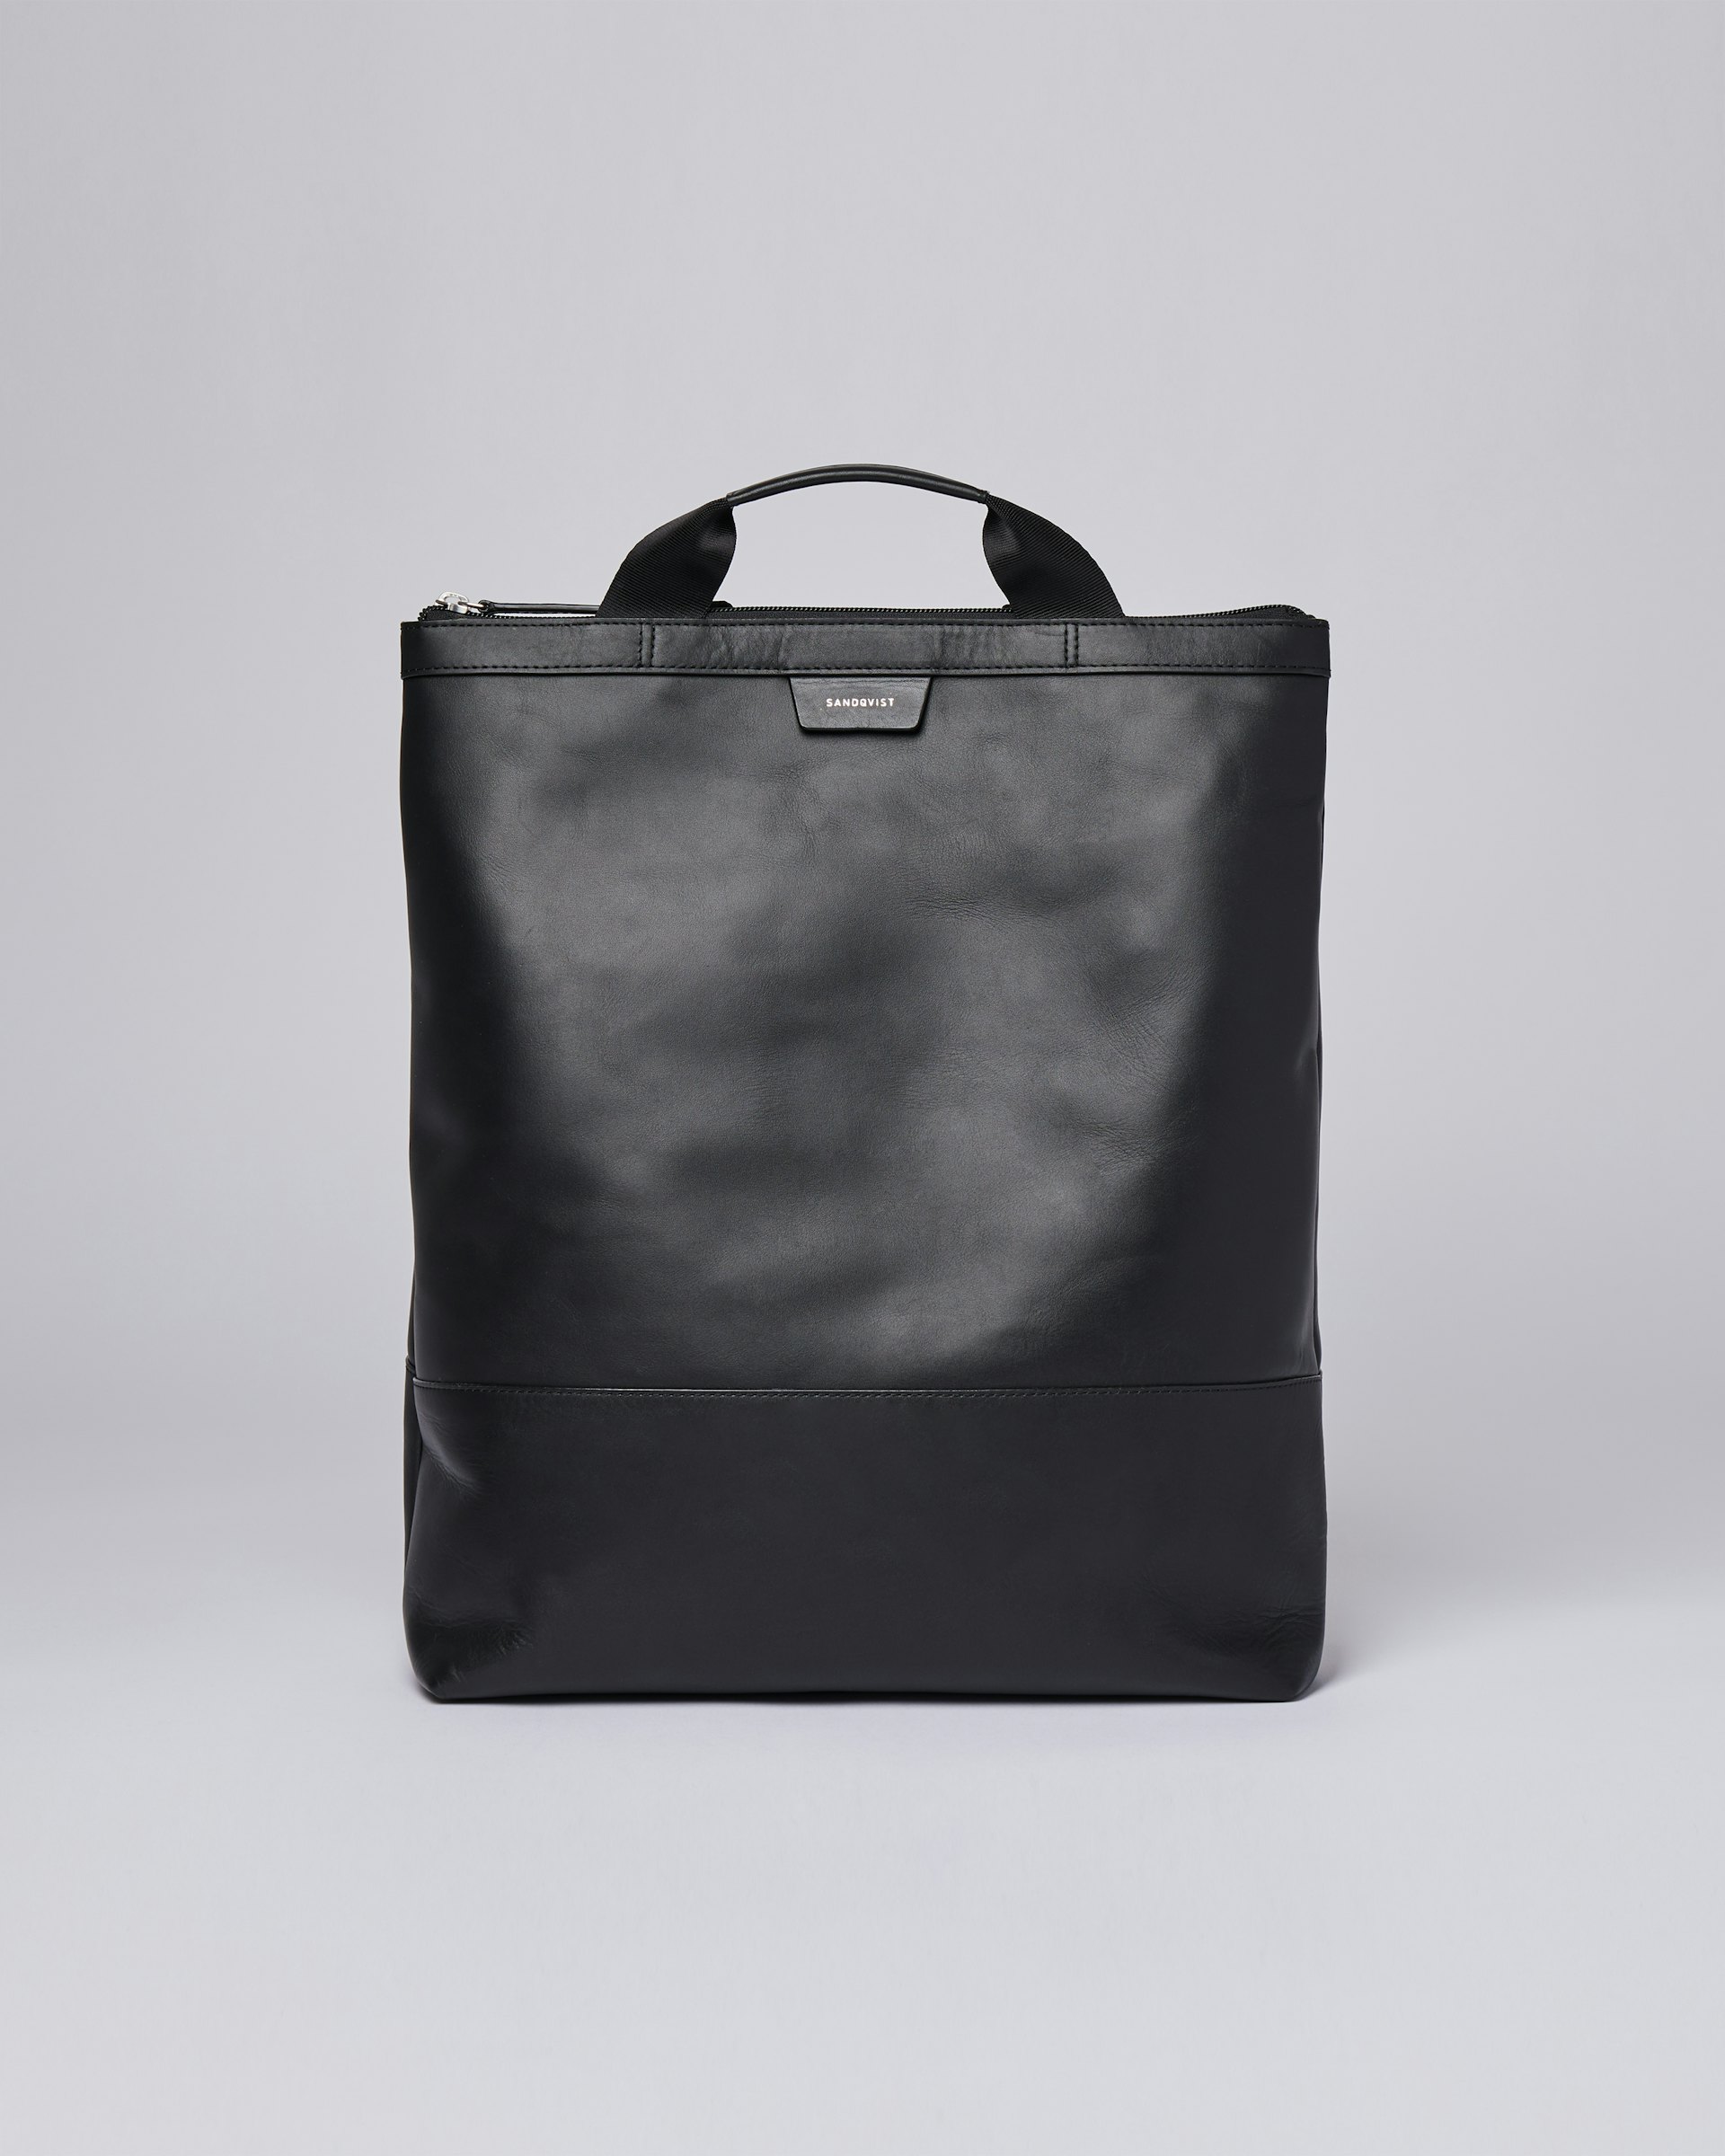 Beenie Leather Black tillhör kategorin Backpacks och är i färgen black